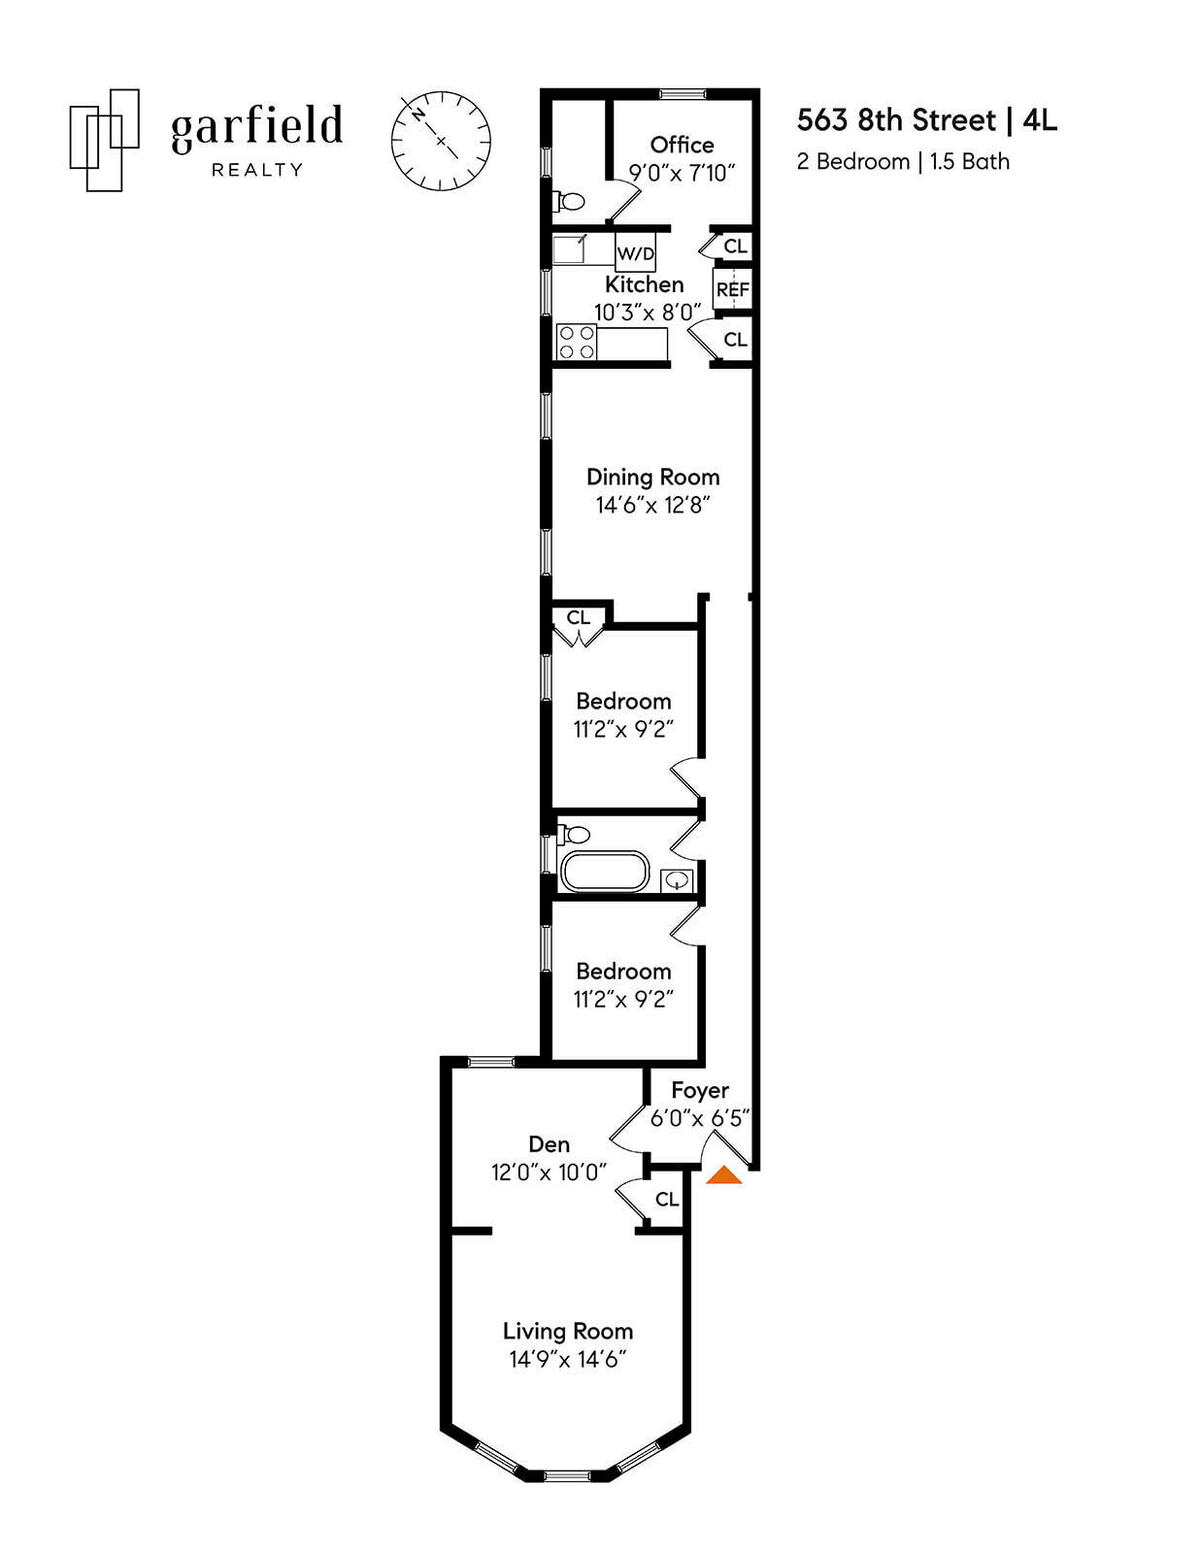 floorplan of unit 4l in 563 8th street